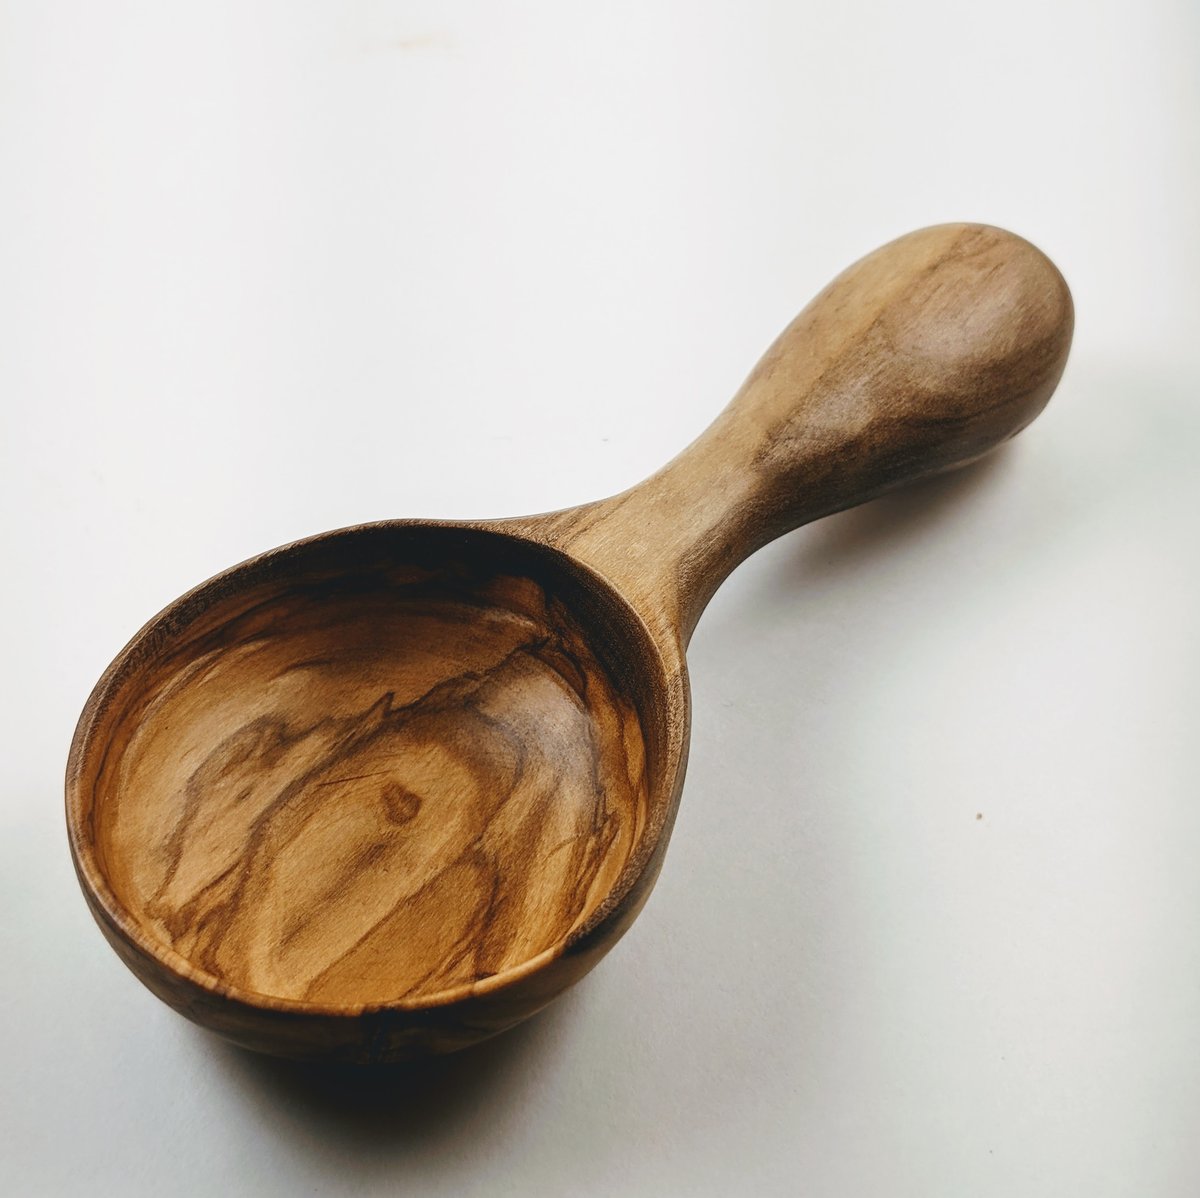 Olive Wood Mini Scoop Spoon